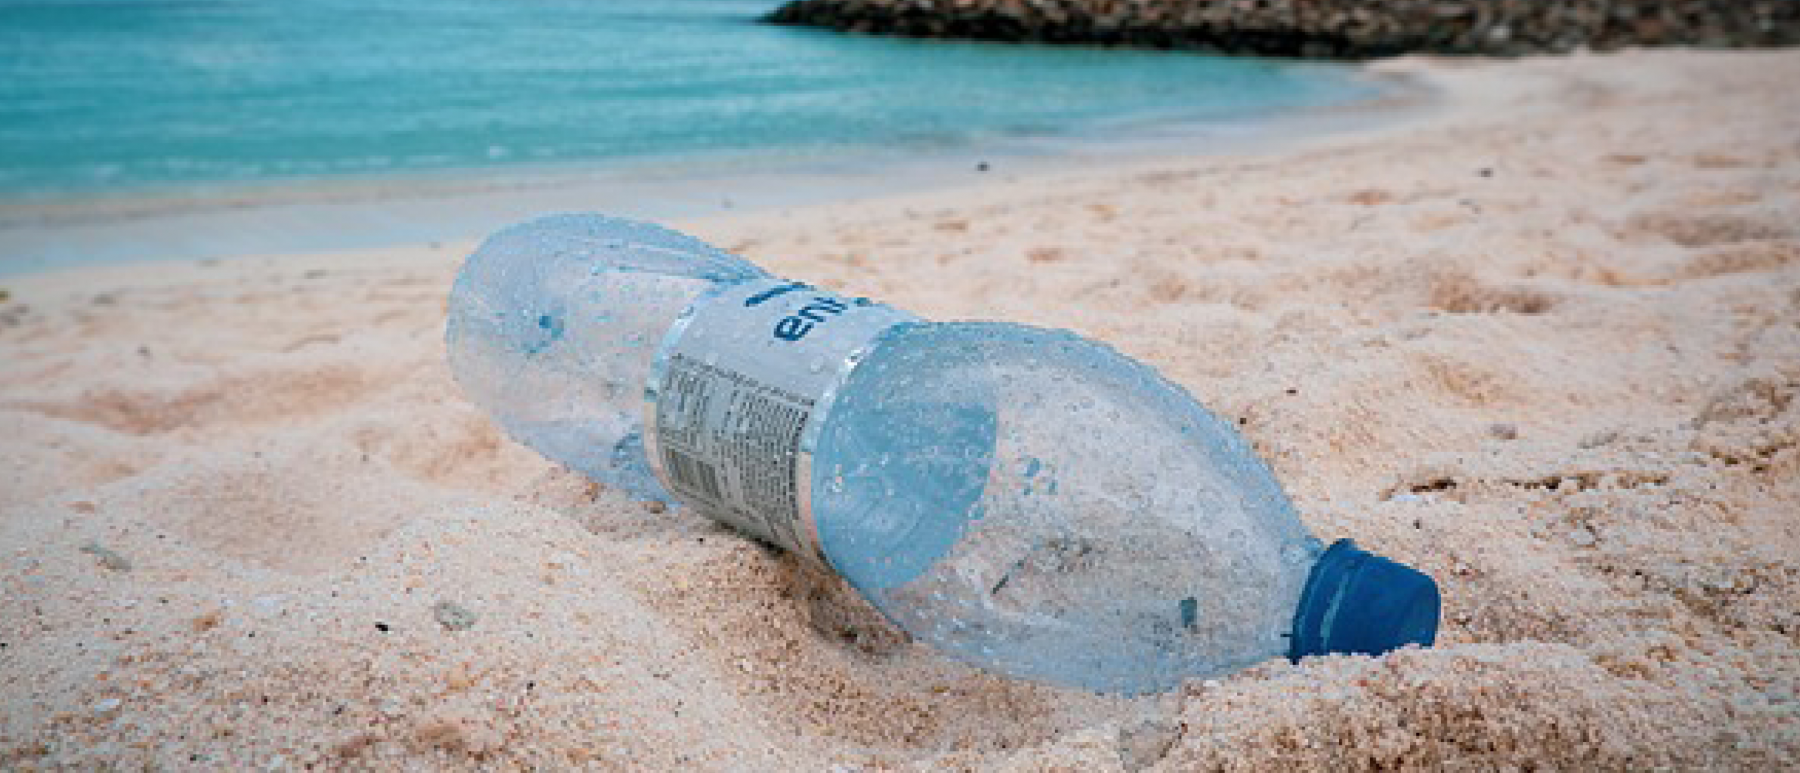 Eau filtrée : une solution pour réduire l'impact du plastique sur l'environnement